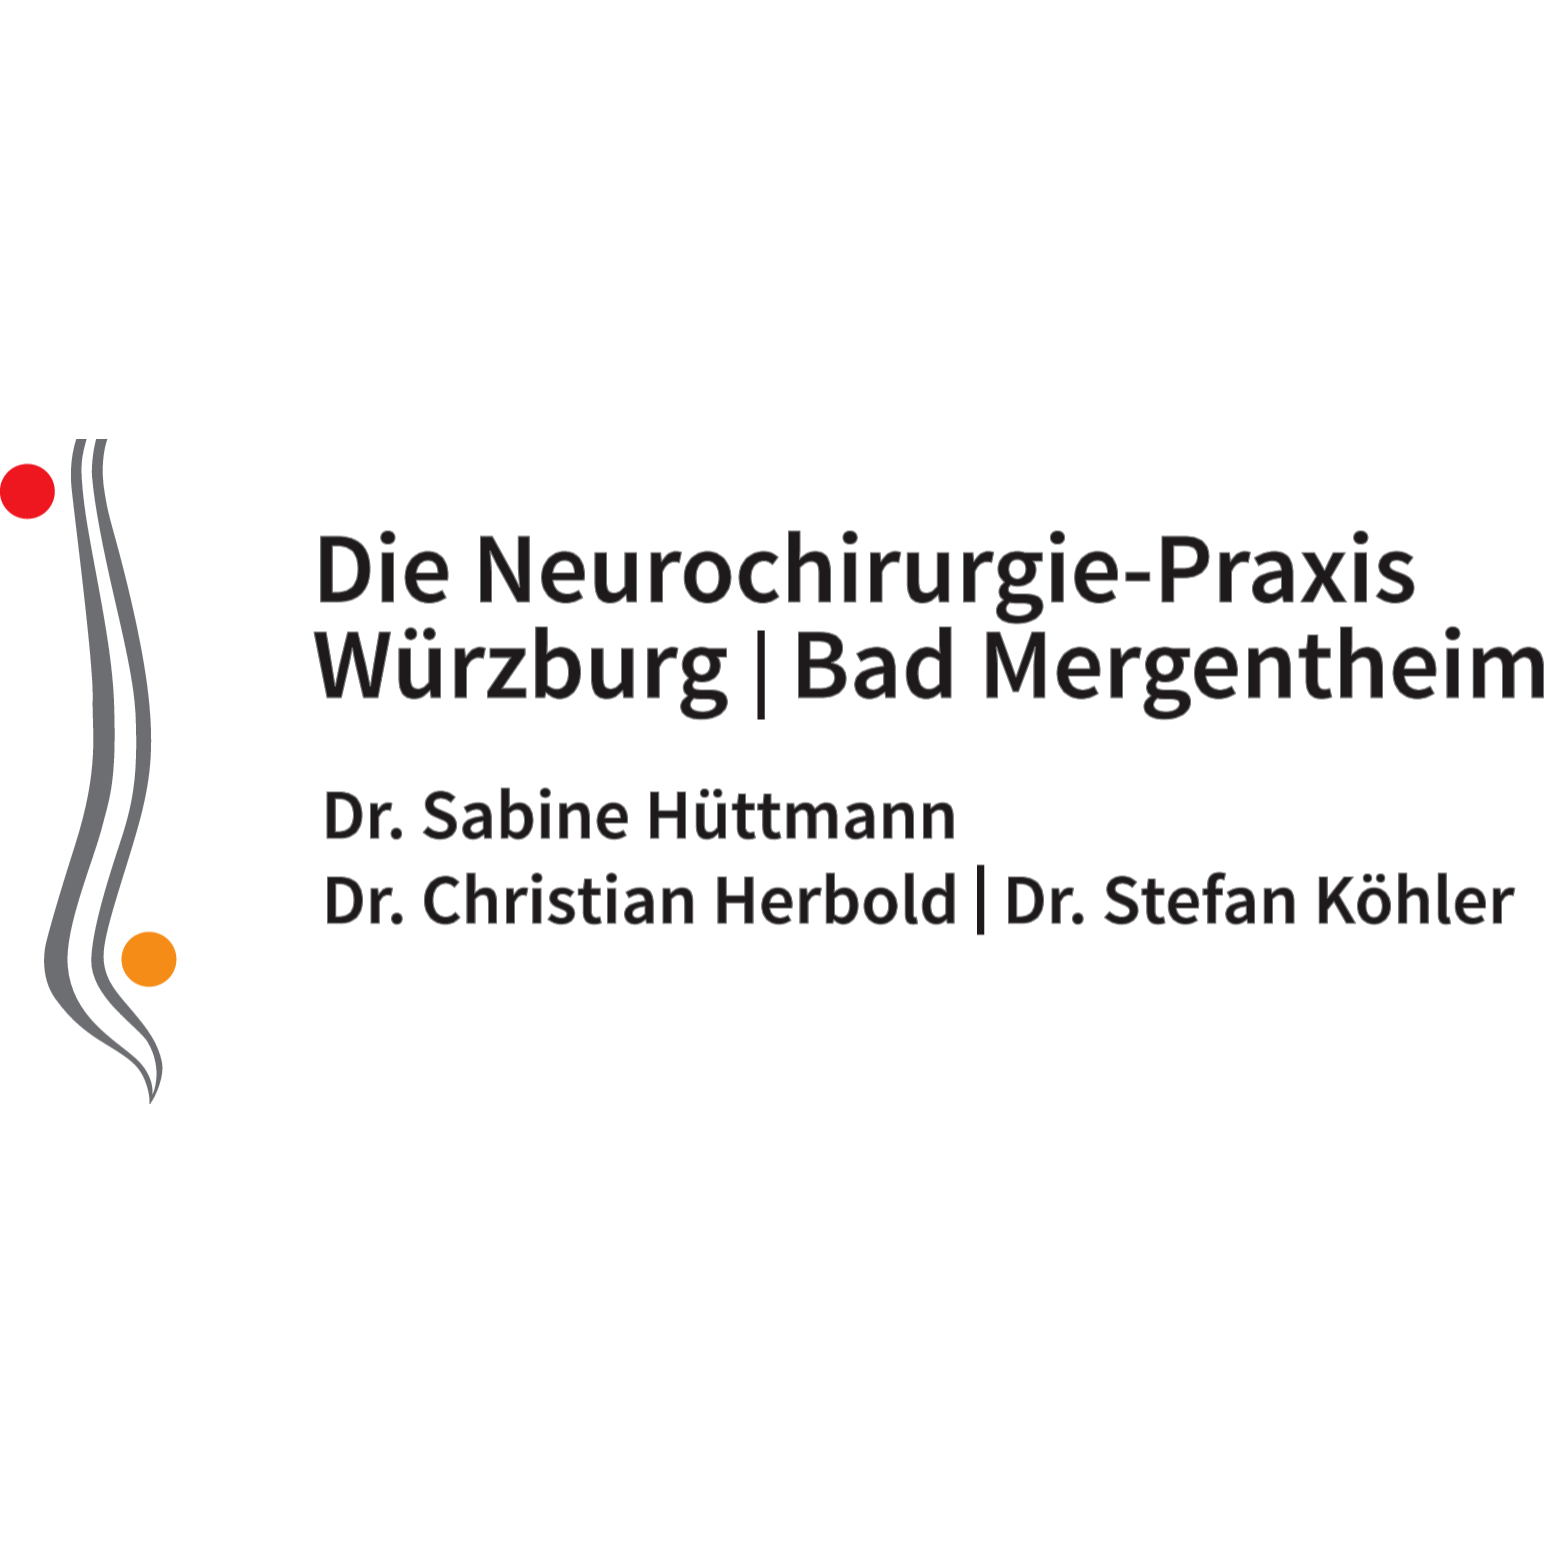 Die Neurochirurgie - Praxis Würzburg Bad Mergentheim in Würzburg - Logo